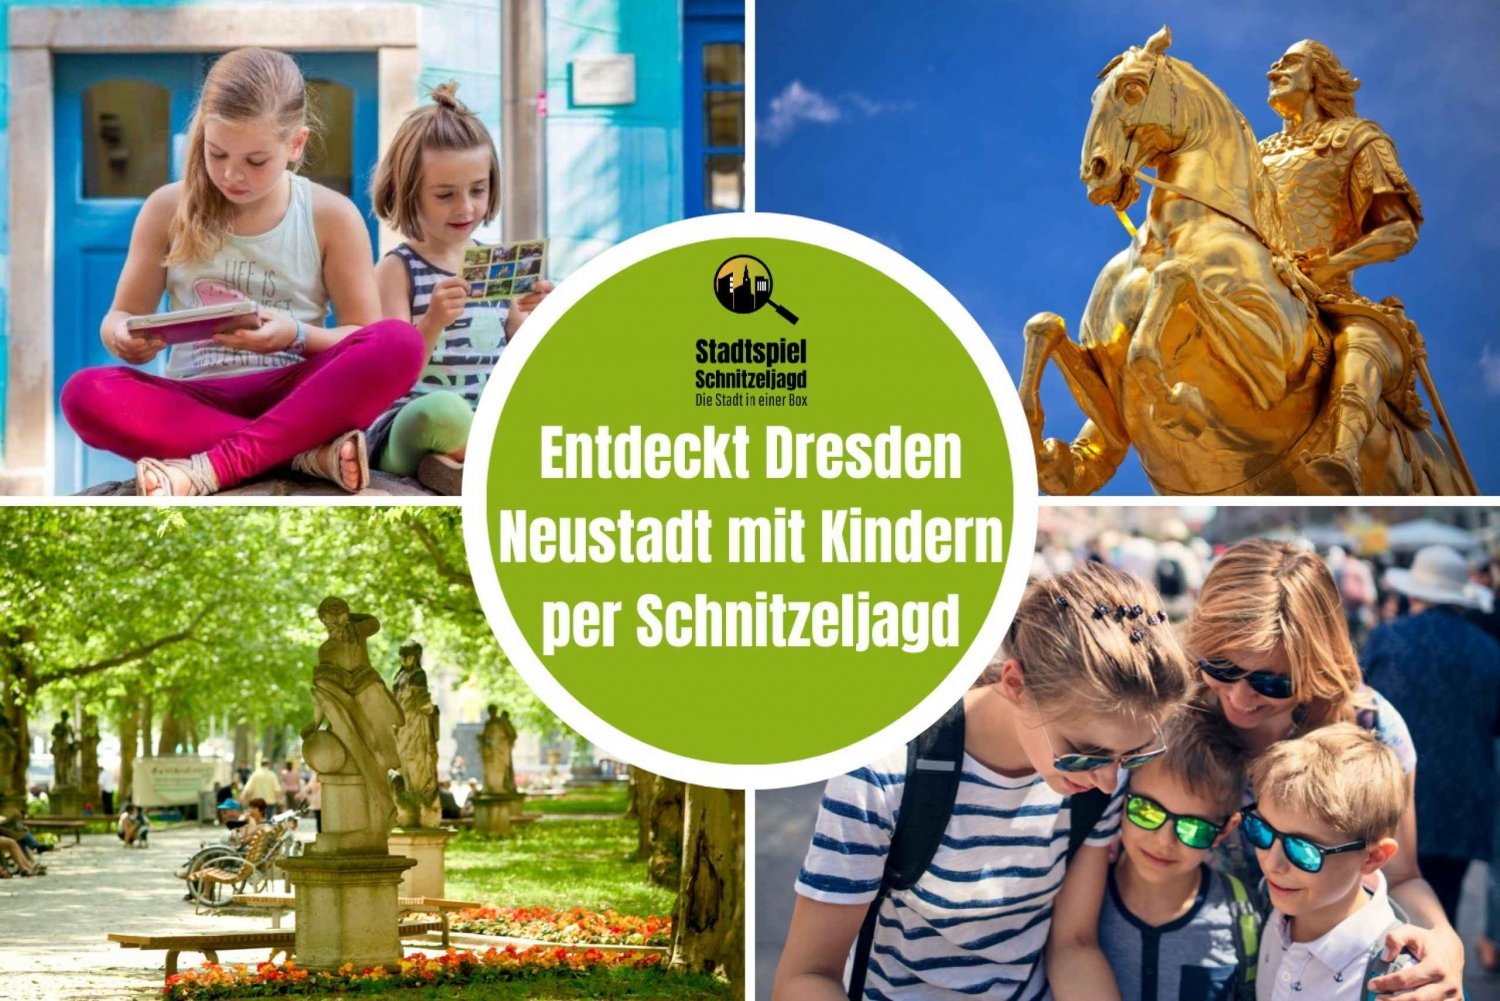 Dresde Neustadt : Chasse au trésor pour les enfants